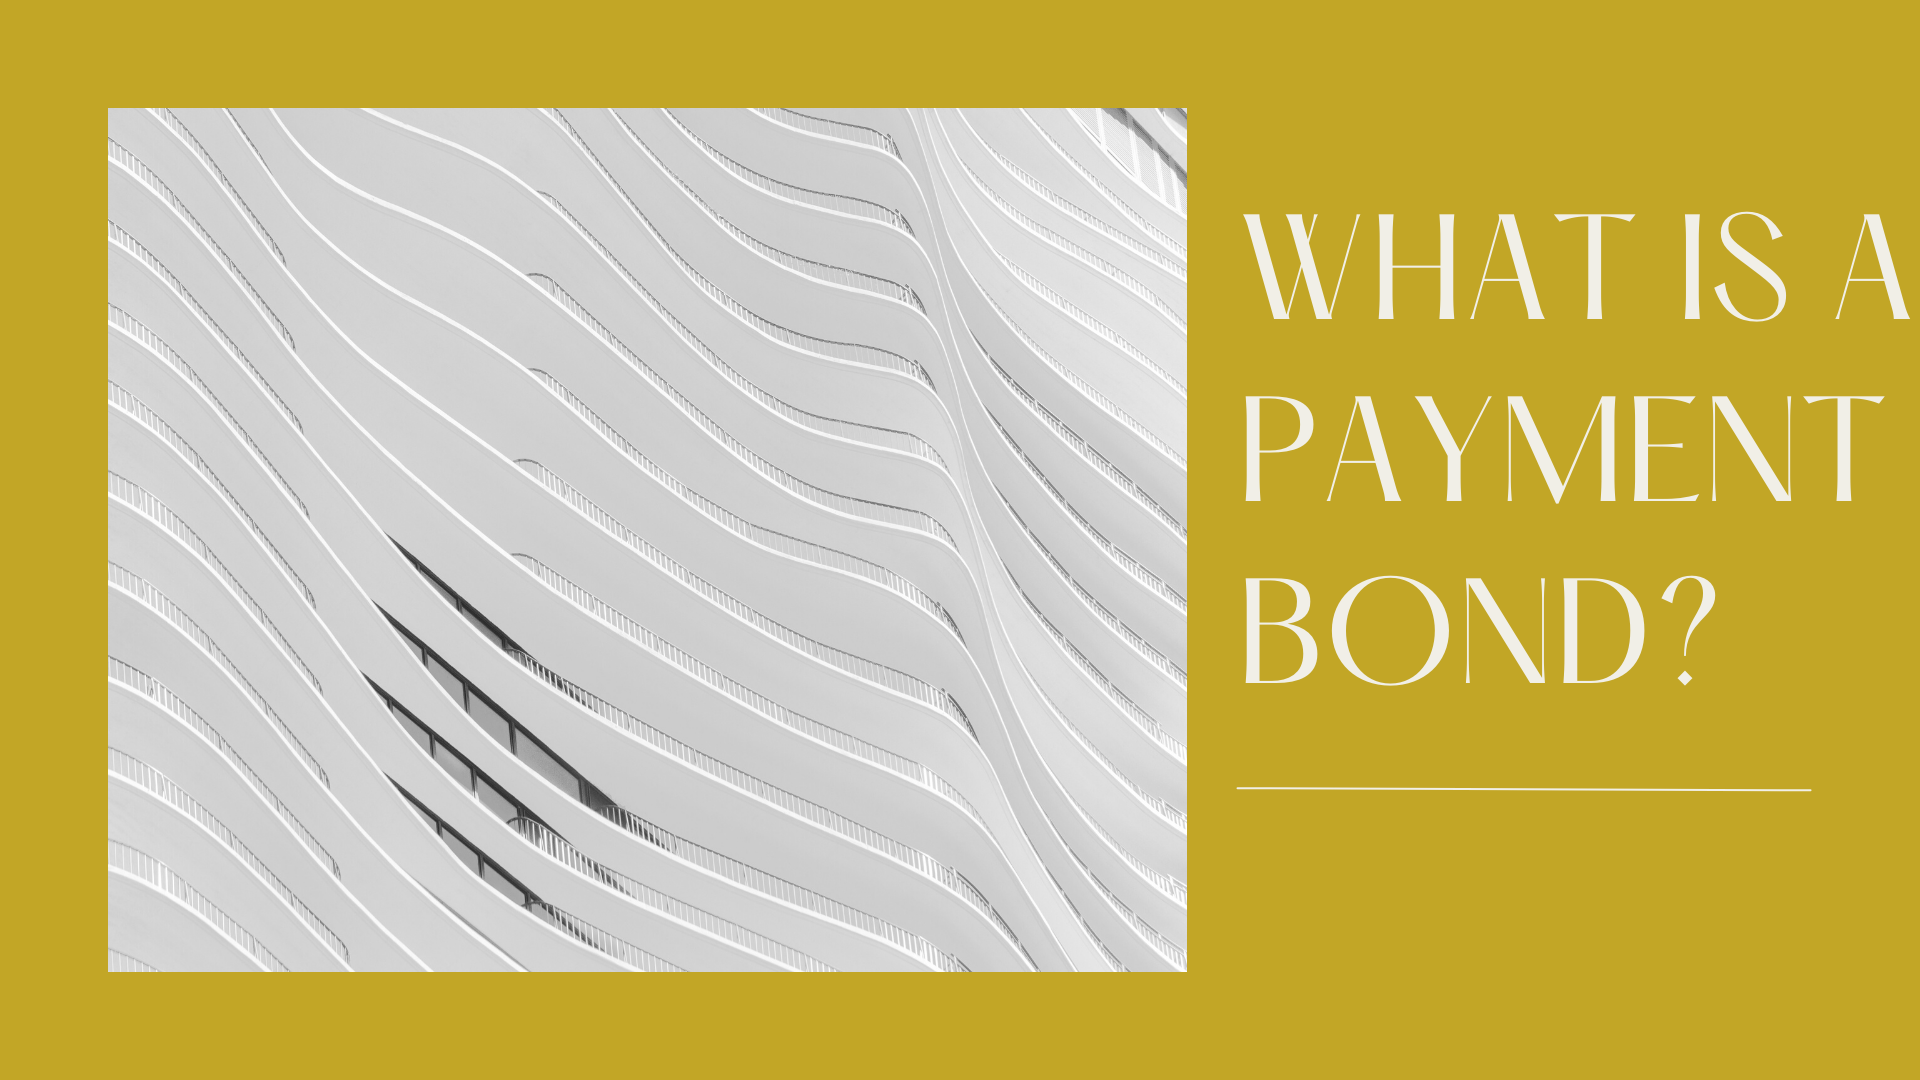 surety bond - How to define payment bonds? - building